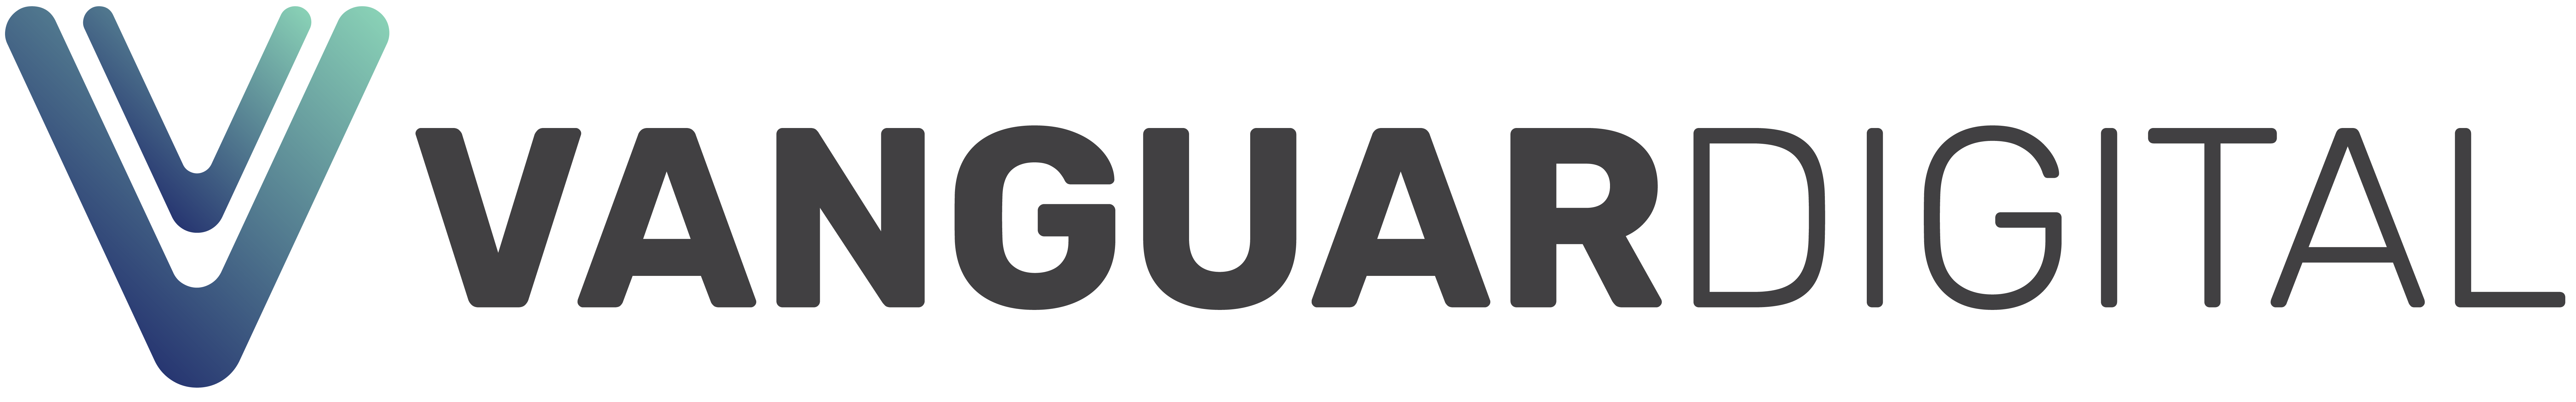 Vanguardigital Sales Logo